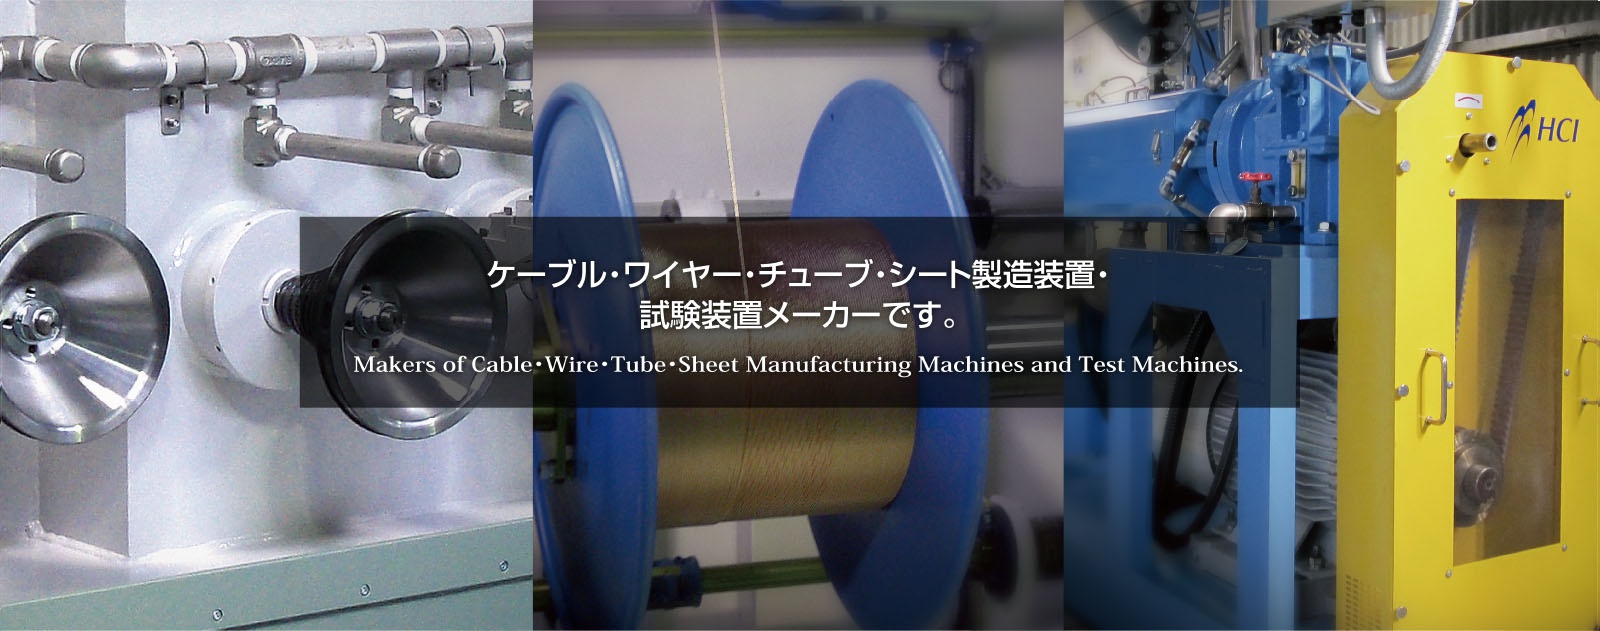 ケーブル・ワイヤー・チューブ・シート製造装置・試験装置メーカーです。